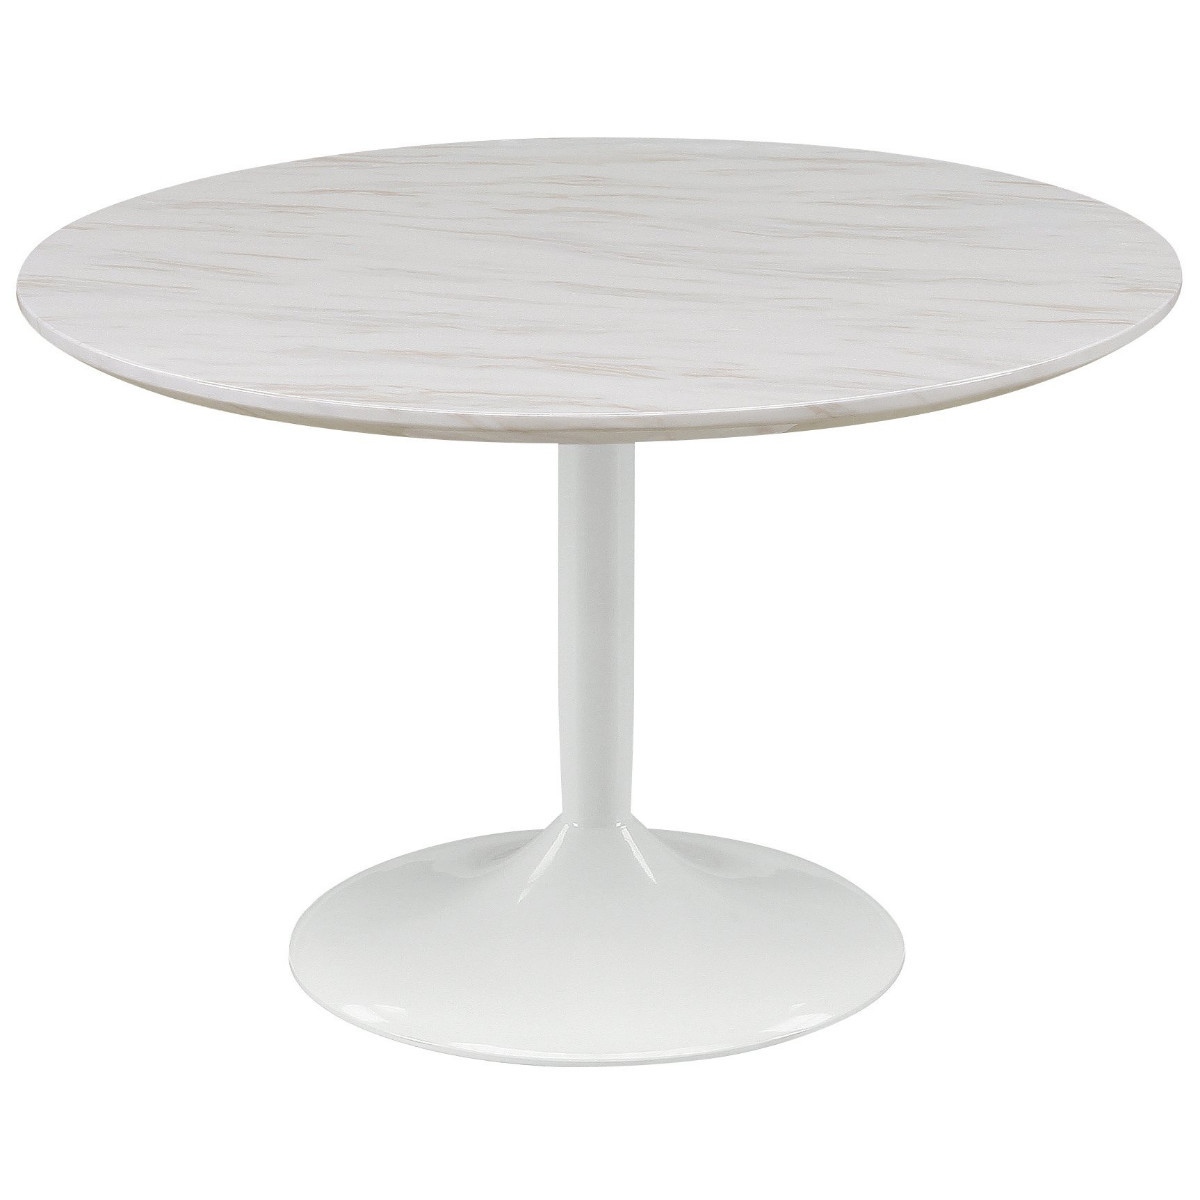 110大理石テーブル ダイニング 丸テーブル 大理石 ホワイト 送料無料 